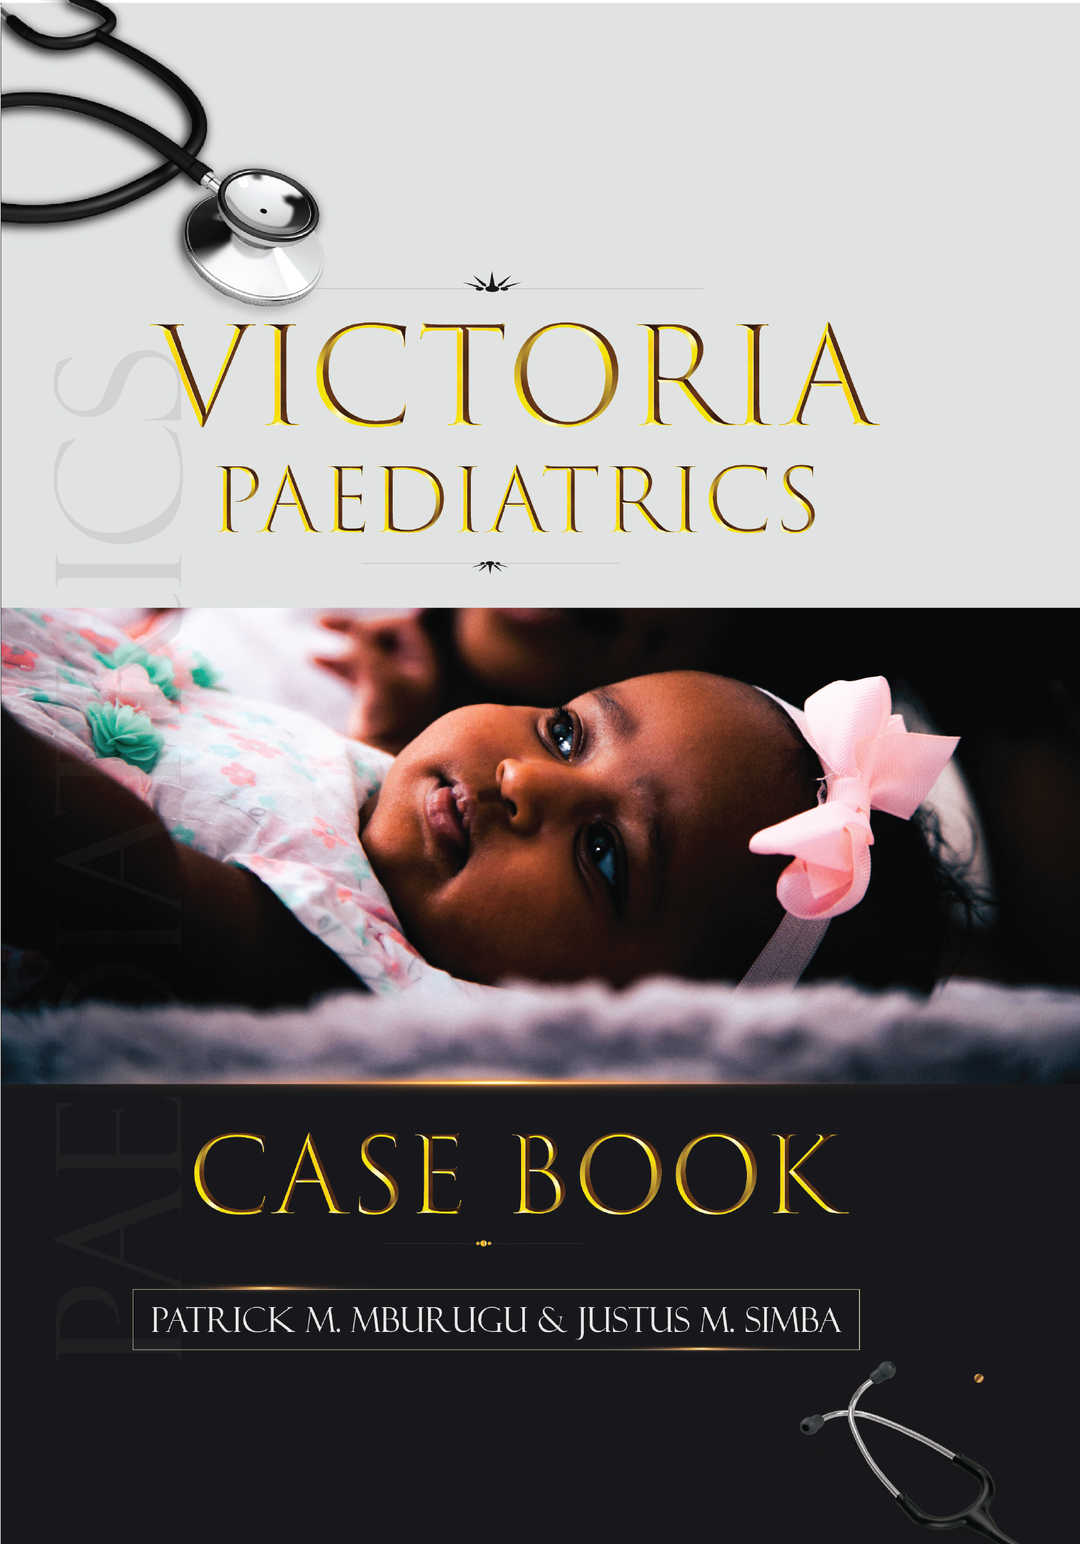 VICTORIA PAEDIATRICS CASE BOOK